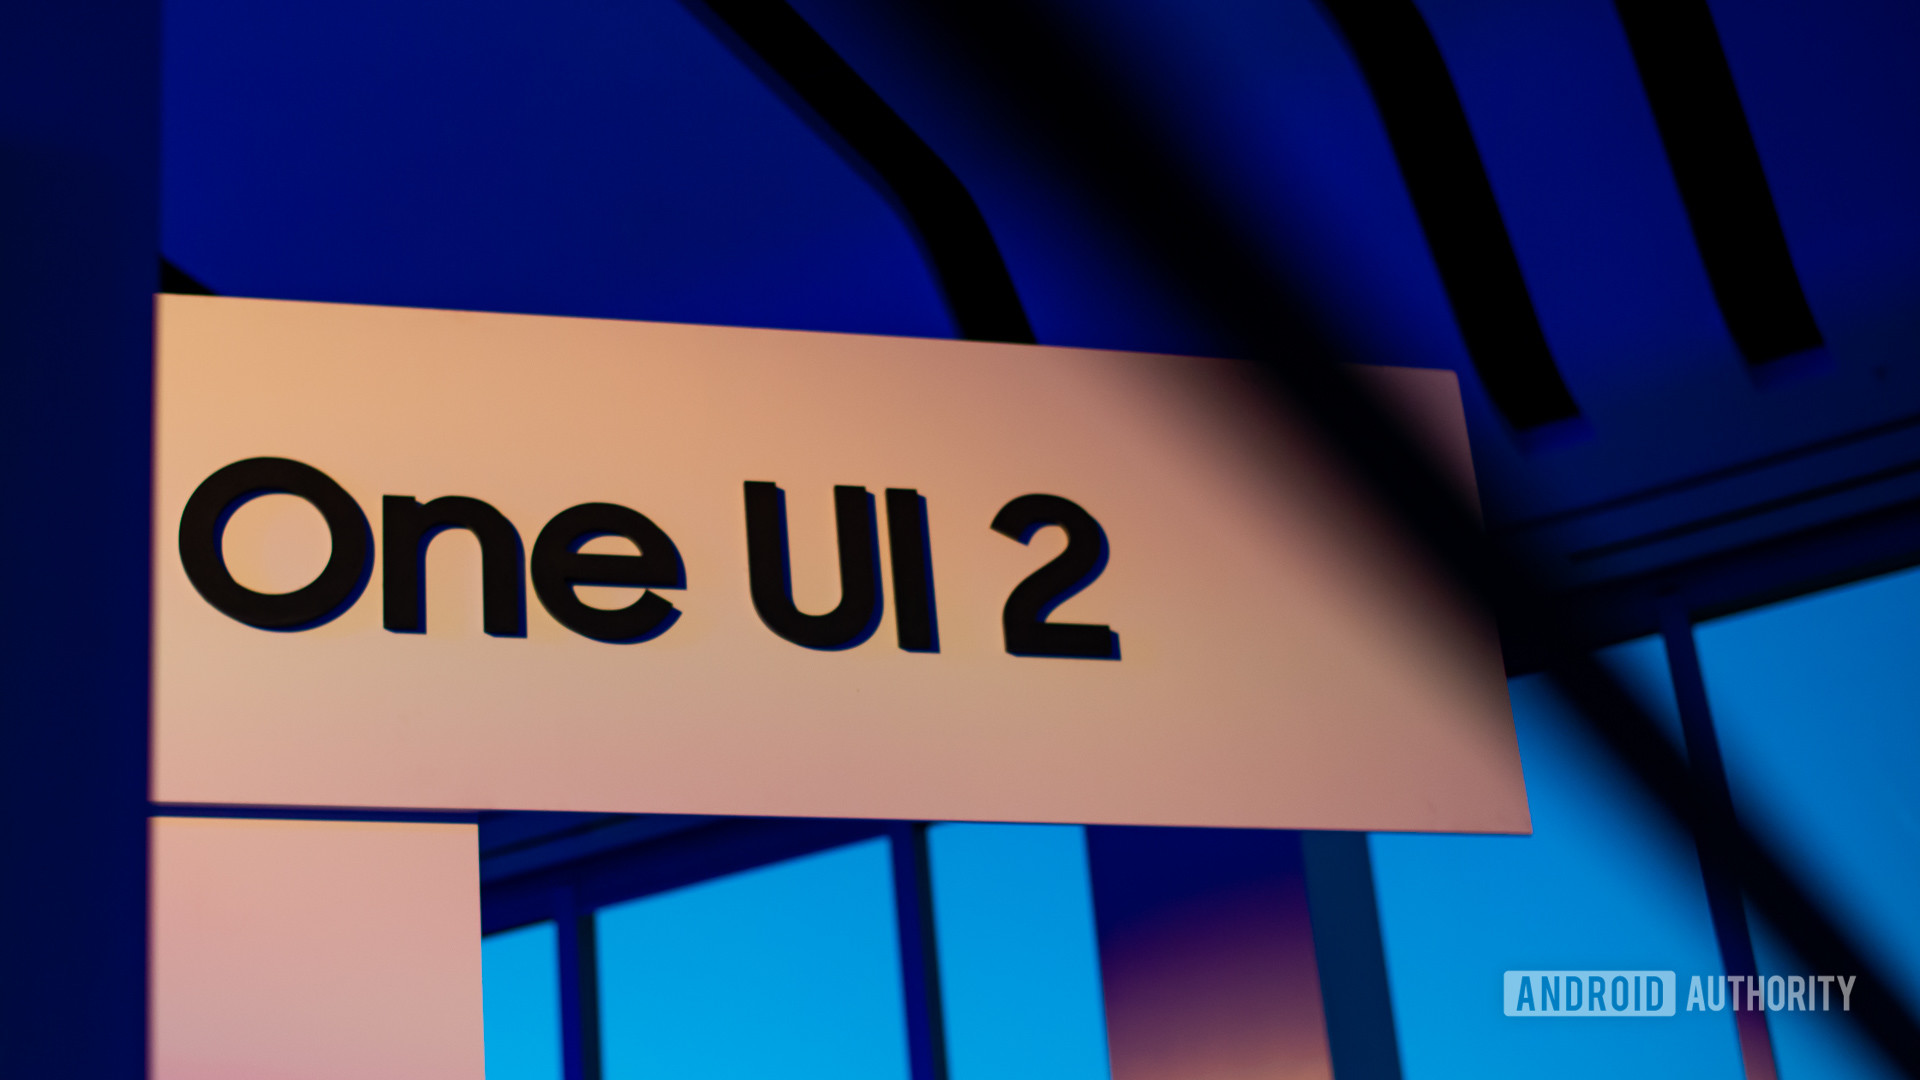 Samsung One UI 2.0 at Samsung Developer Conference 2019 2